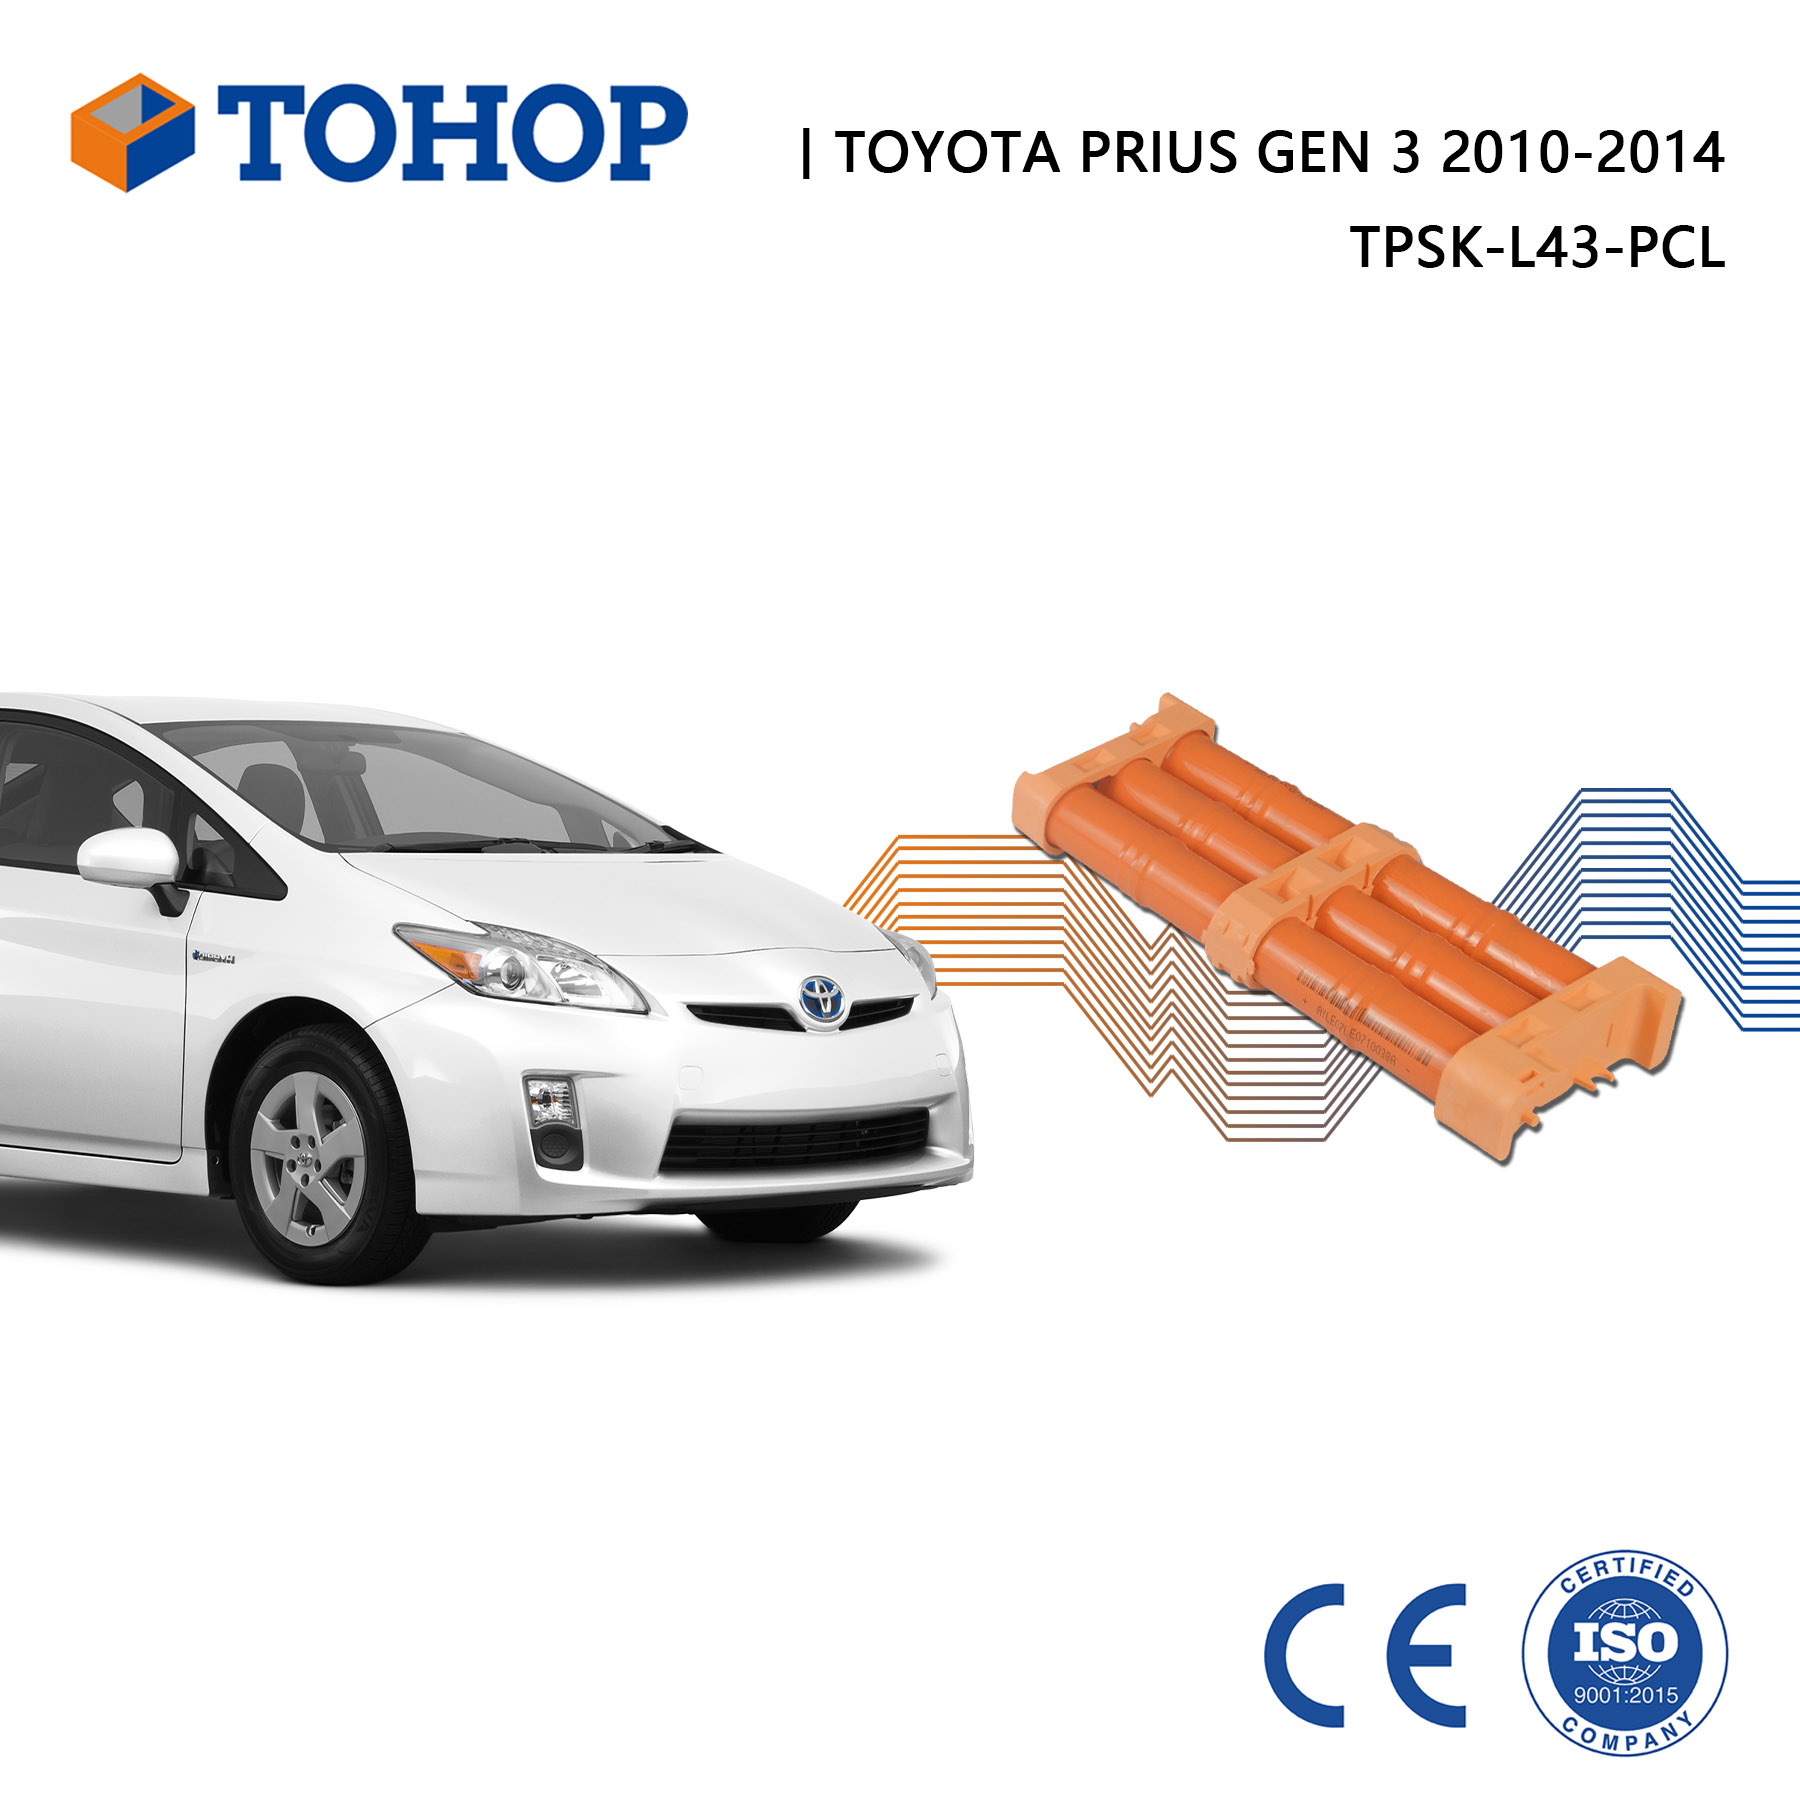 Toyota Prius Gen.3 Hybridbatterie 2010-2015 6,5 Ah Hybrid-Autobatteriepack